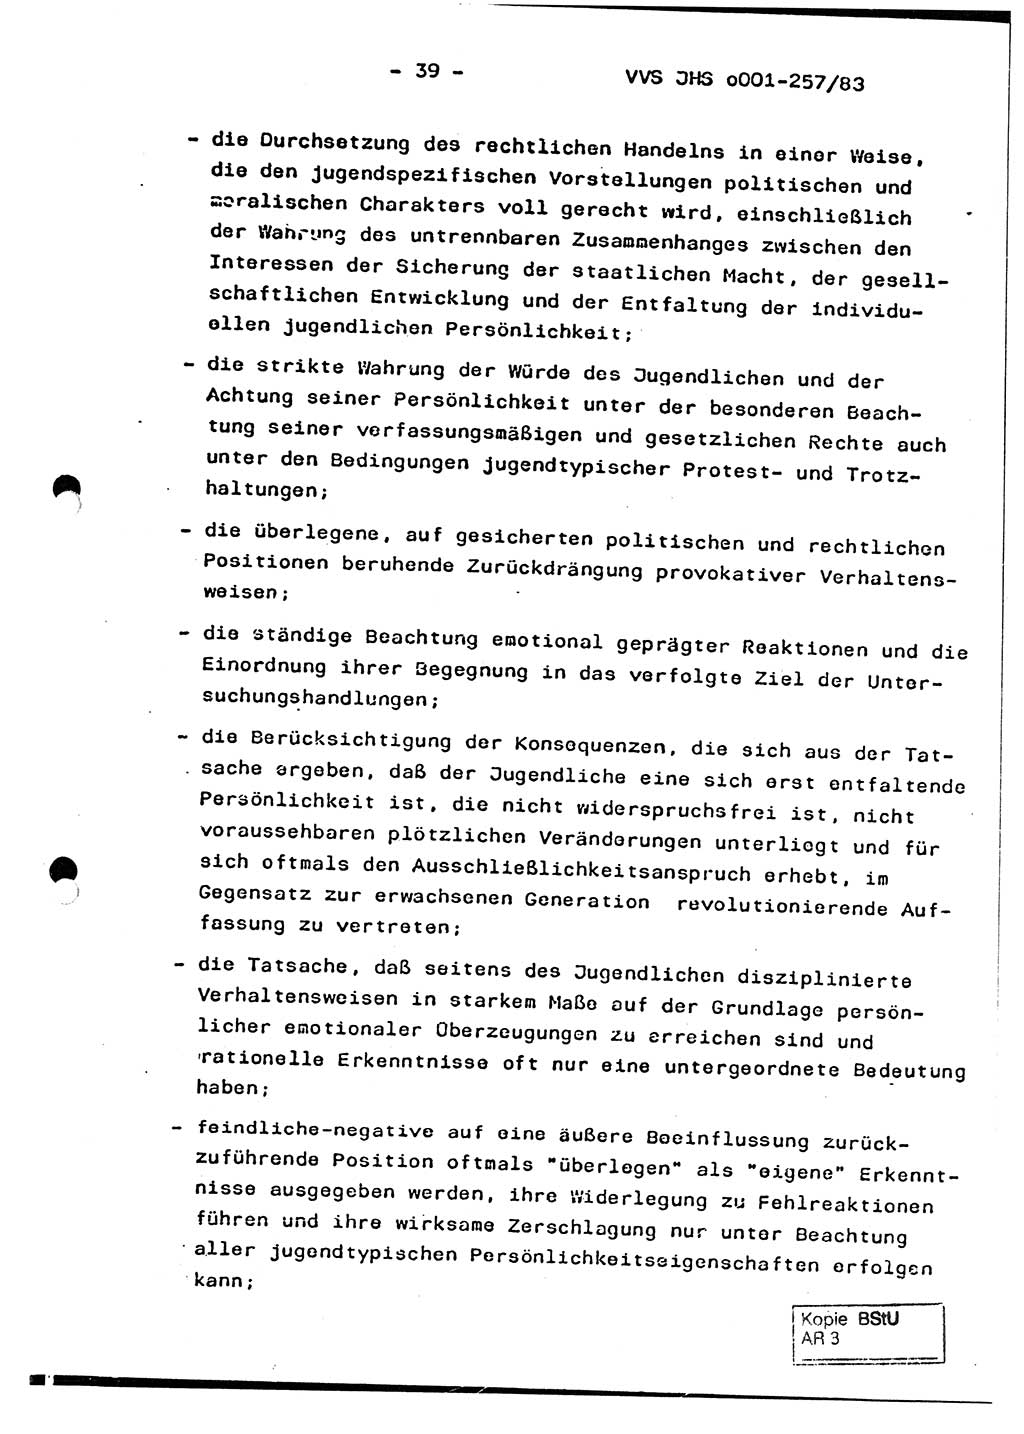 Dissertation, Oberst Helmut Lubas (BV Mdg.), Oberstleutnant Manfred Eschberger (HA IX), Oberleutnant Hans-Jürgen Ludwig (JHS), Ministerium für Staatssicherheit (MfS) [Deutsche Demokratische Republik (DDR)], Juristische Hochschule (JHS), Vertrauliche Verschlußsache (VVS) o001-257/83, Potsdam 1983, Seite 39 (Diss. MfS DDR JHS VVS o001-257/83 1983, S. 39)